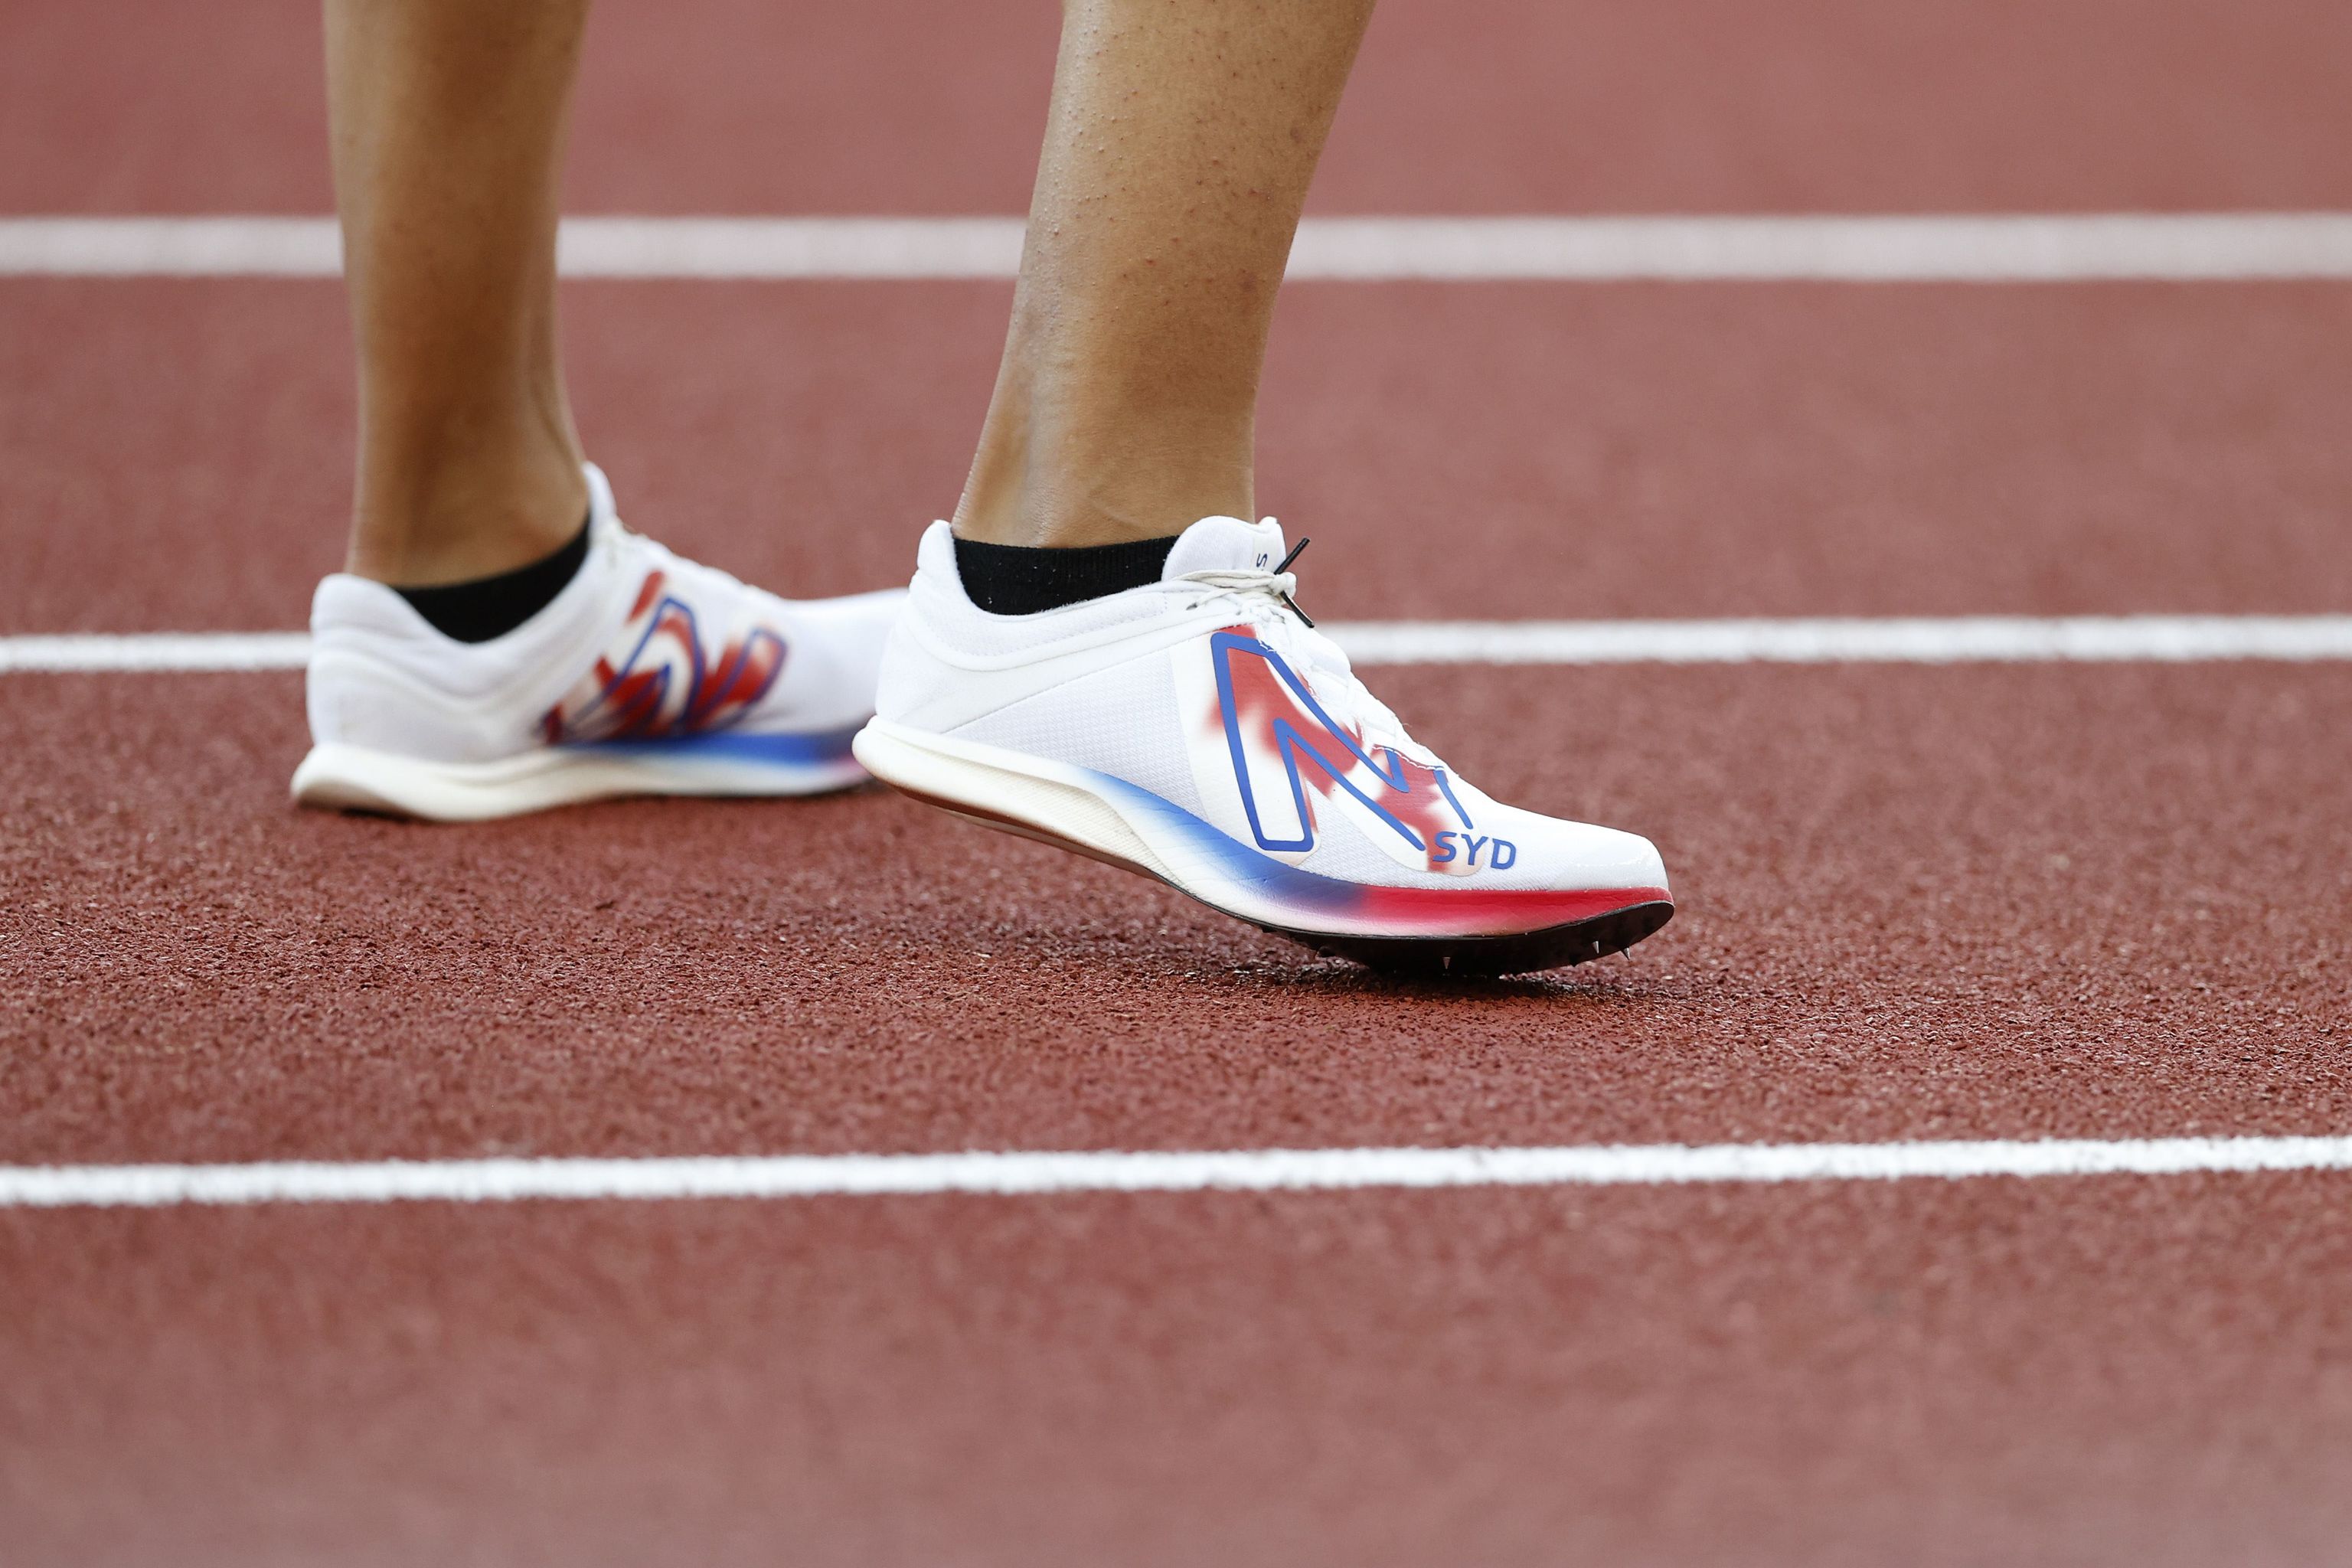 Las zapatillas voladoras: récords y una normativa | Más deporte